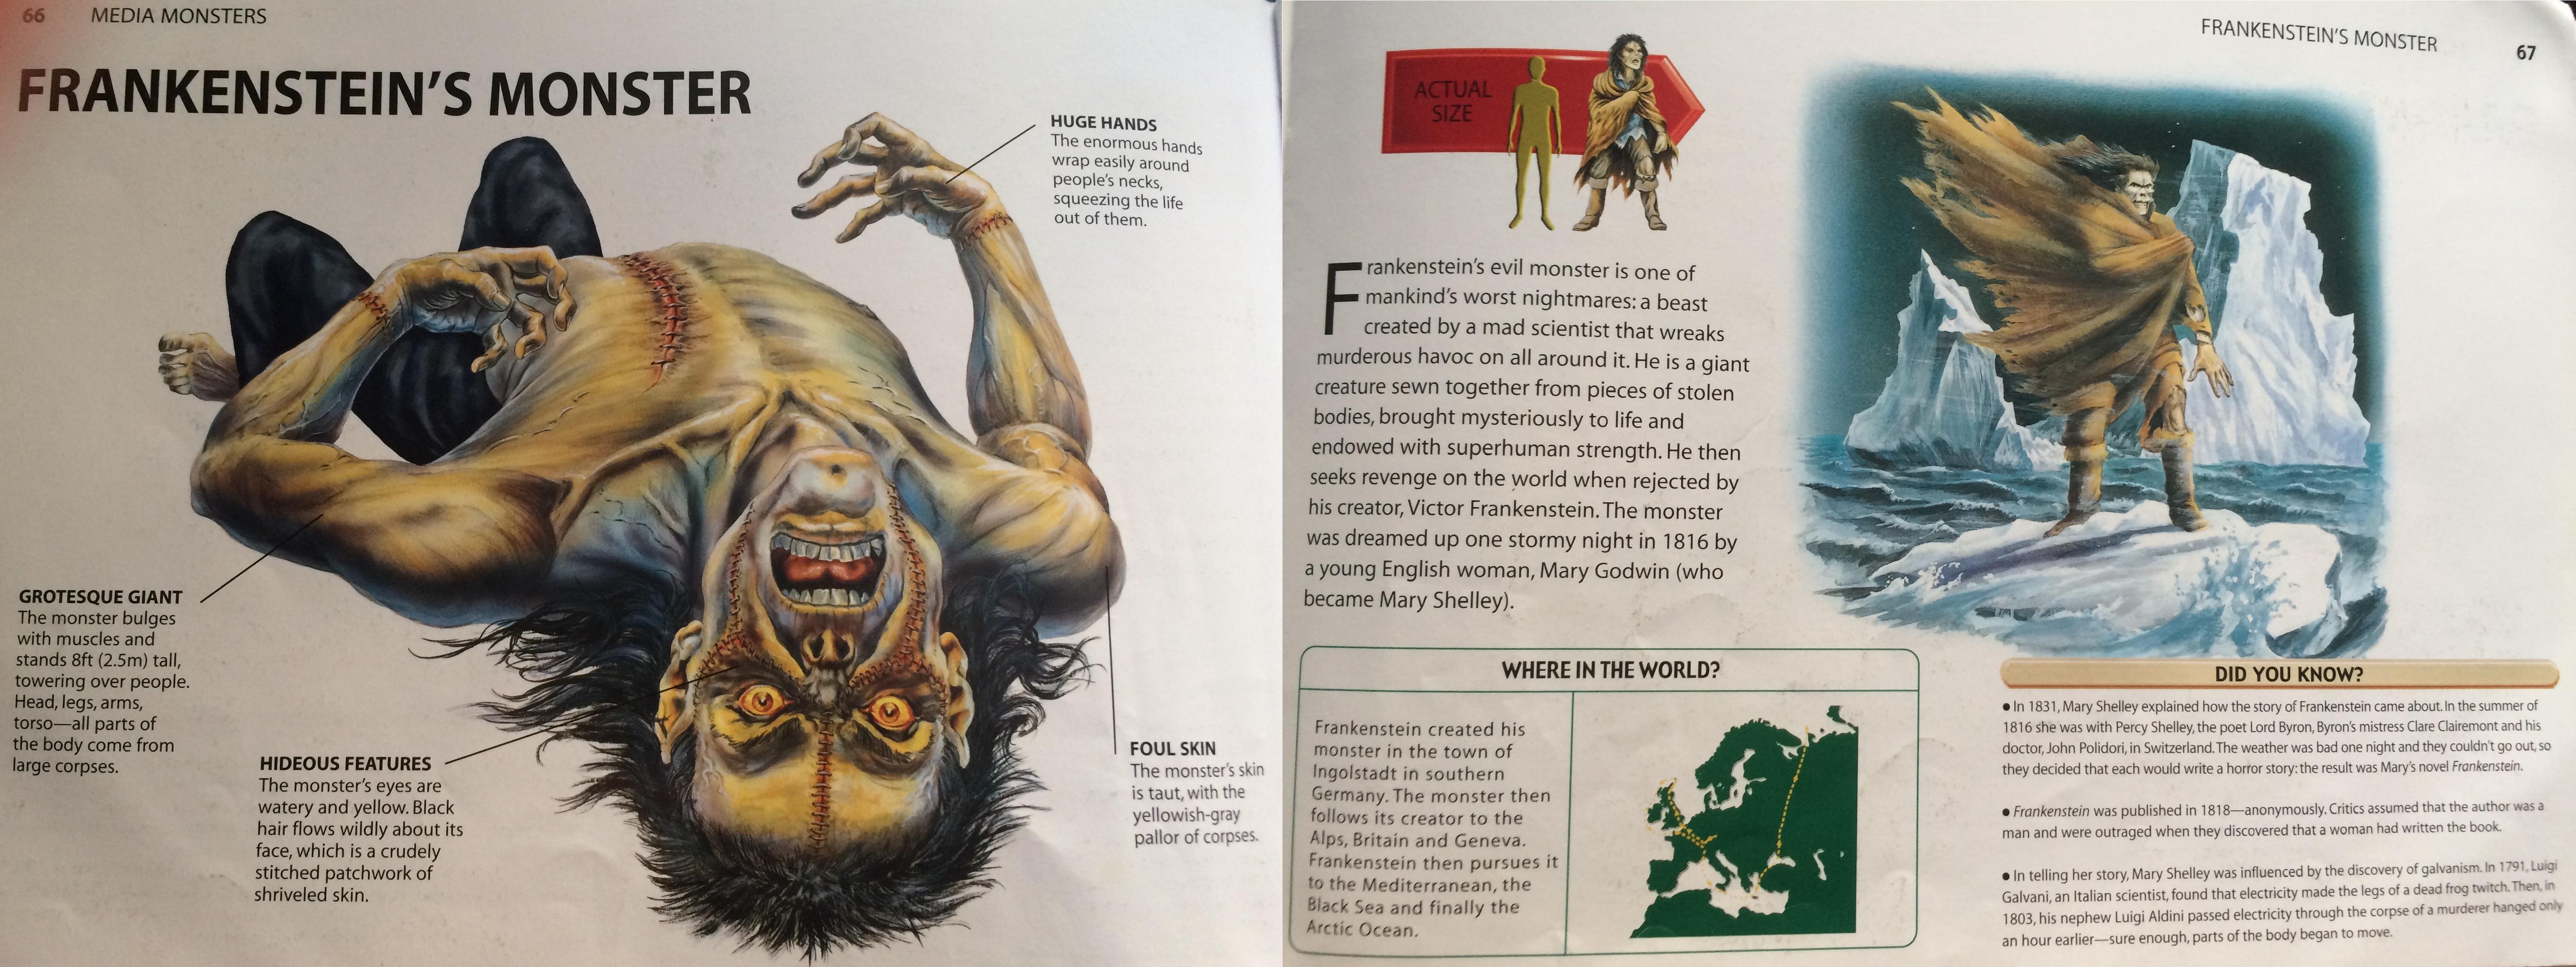 Illustration of Frankenstein's Monster from Mythical Monsters:The ...